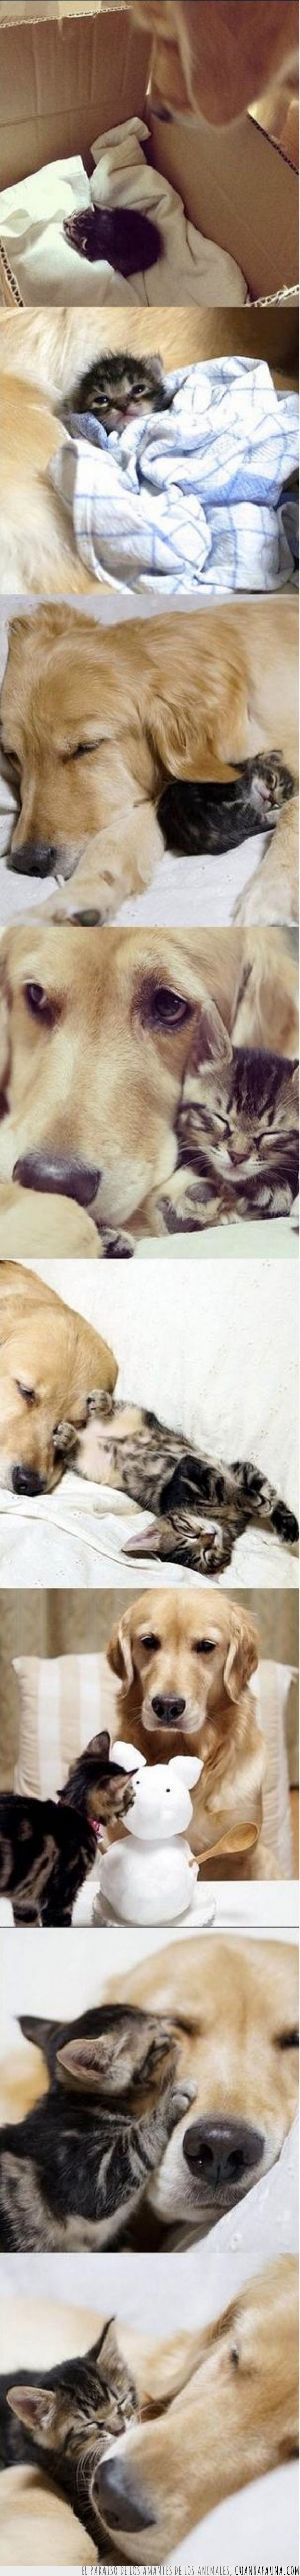 perro,gato,golden retriever,adoptar,hijo,amor,gatito,cachorro,madre